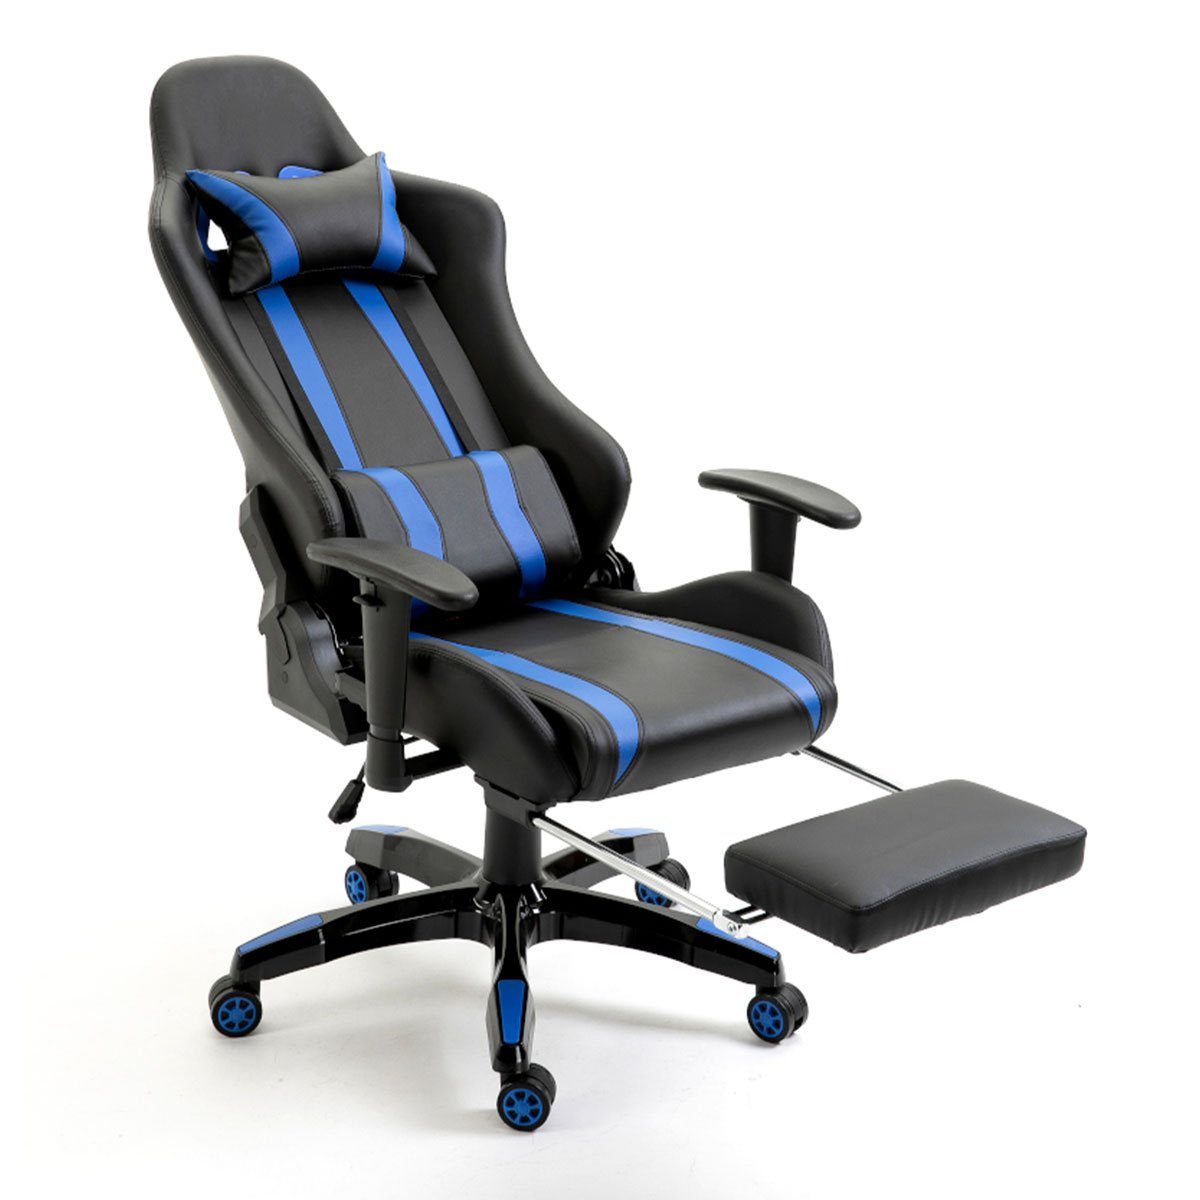 blau Leder-Optik Farbwahl SVITA Racing Bürostuhl Chefsessel Gaming-Stuhl Schreibtischstuhl mit Armlehnen